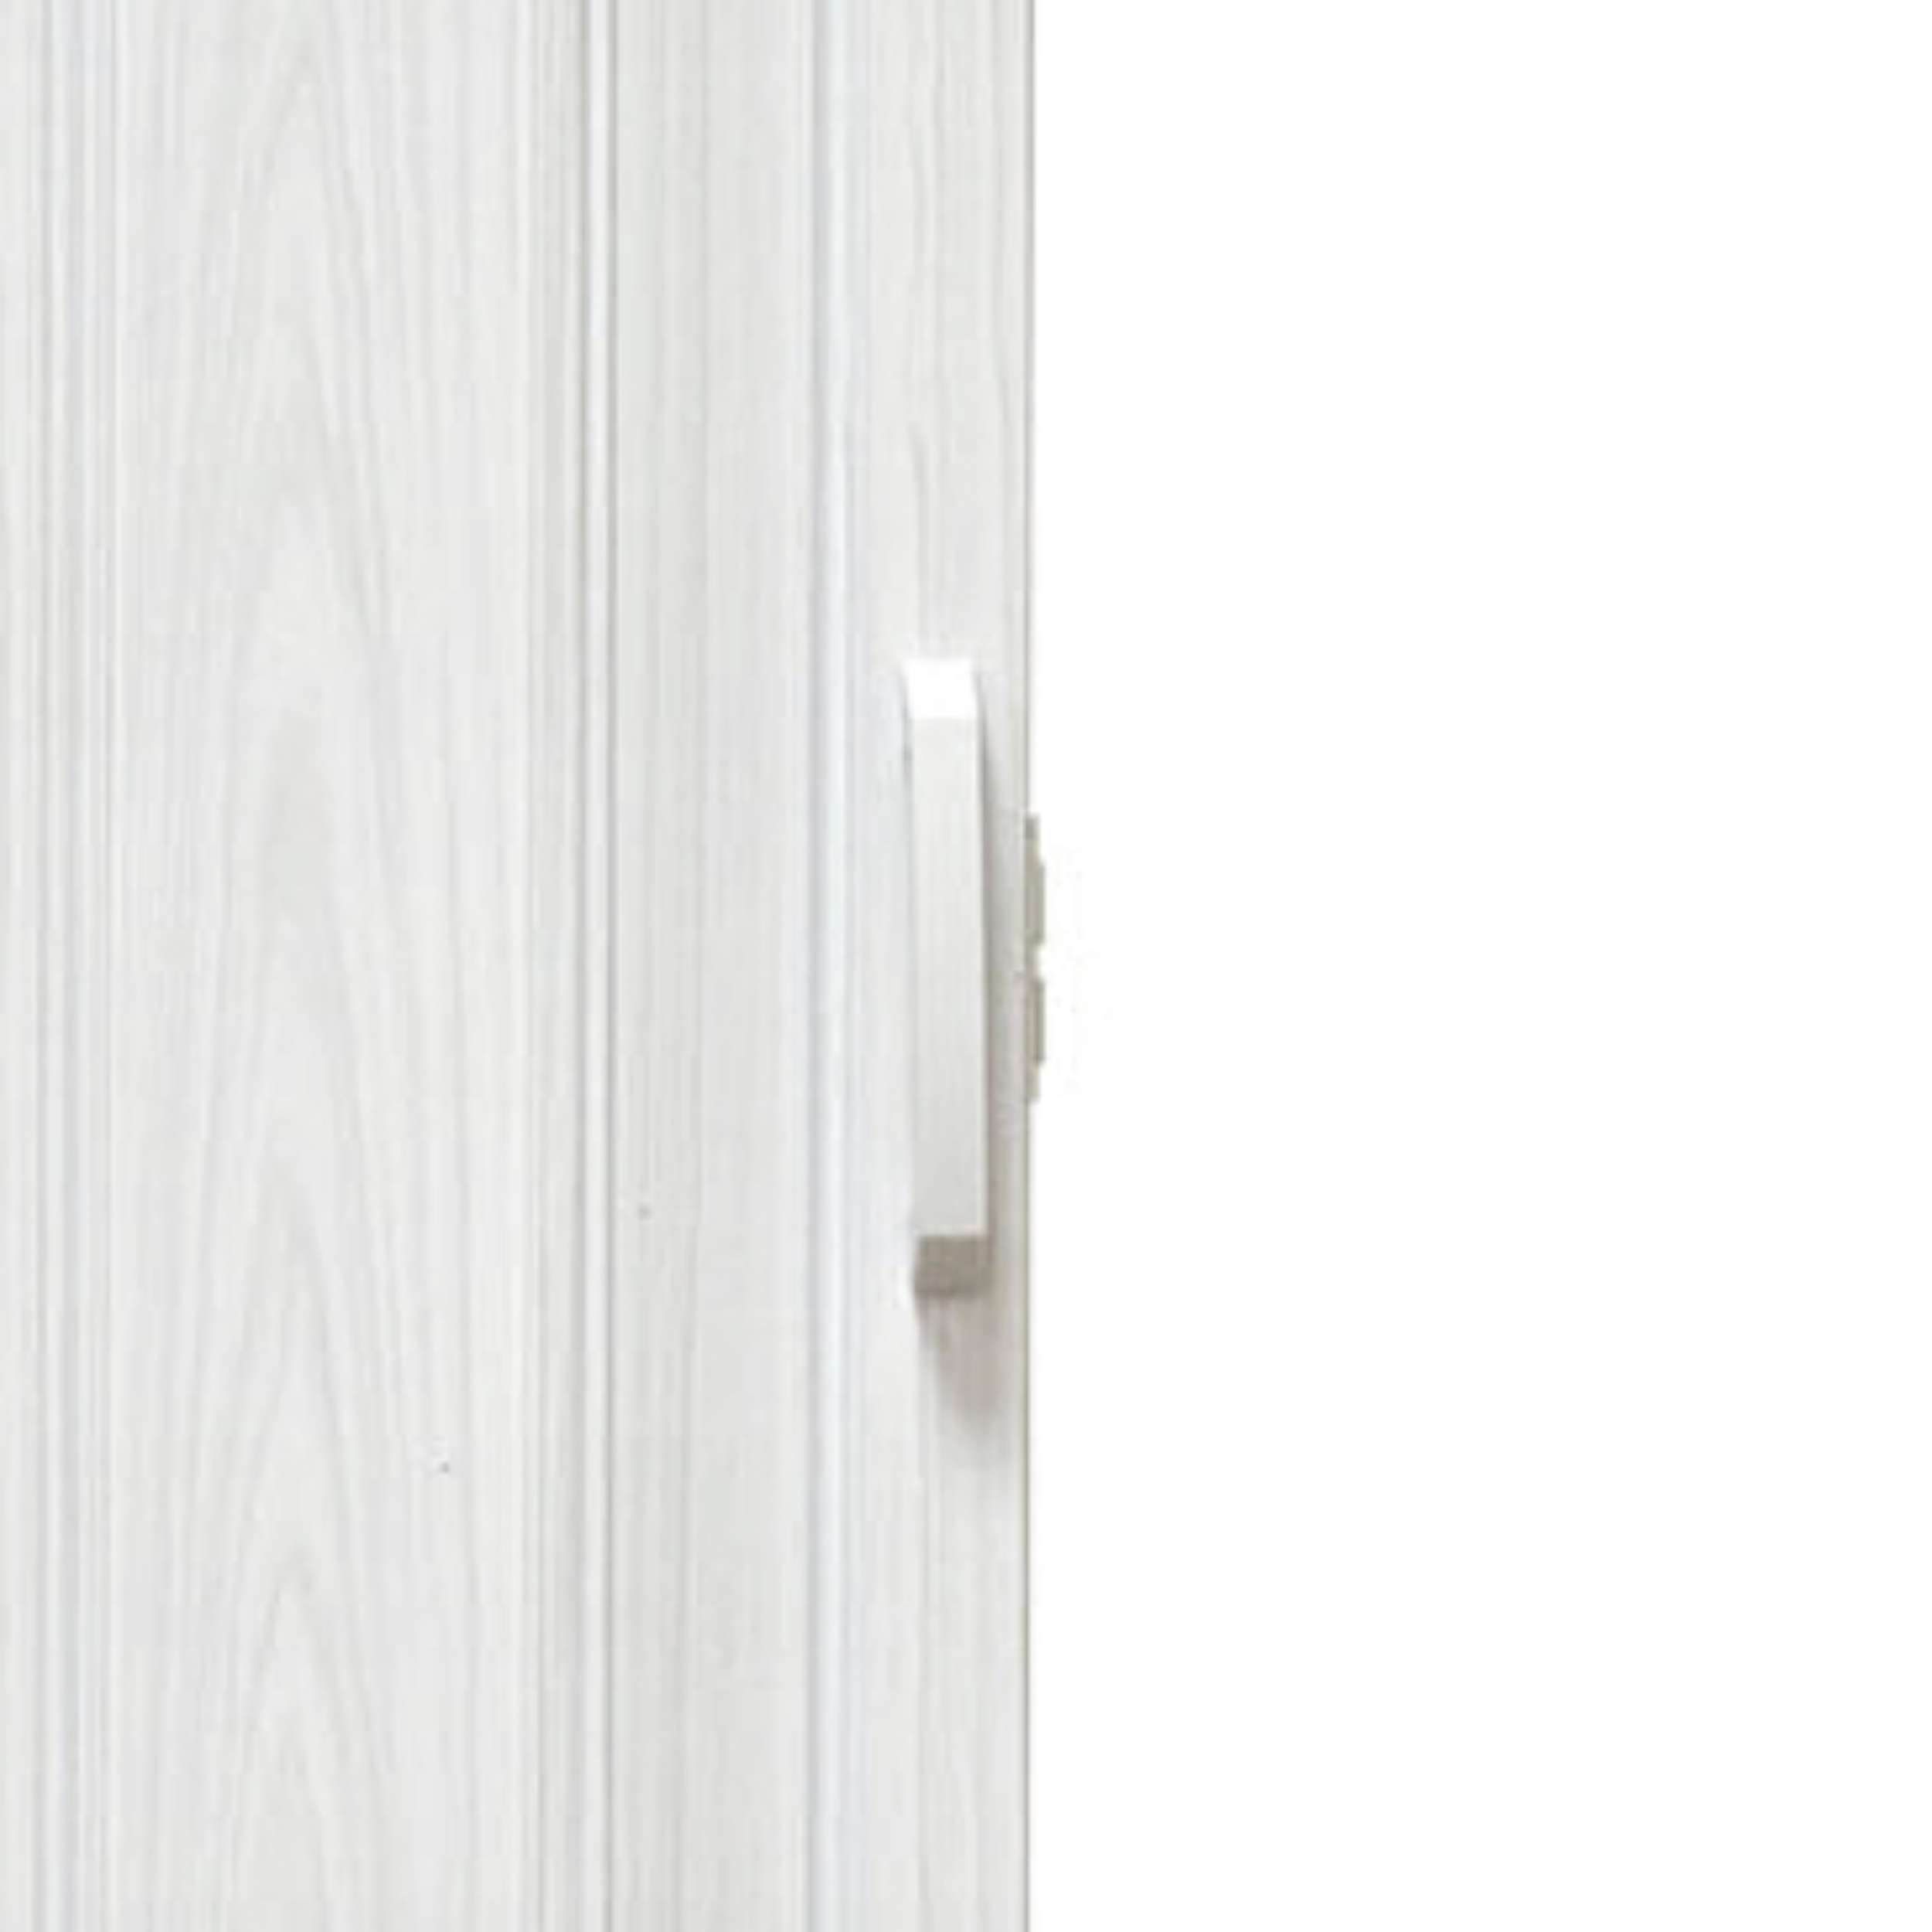 Drzwi Harmonijkowe PCV Biały Dąb 90 cm